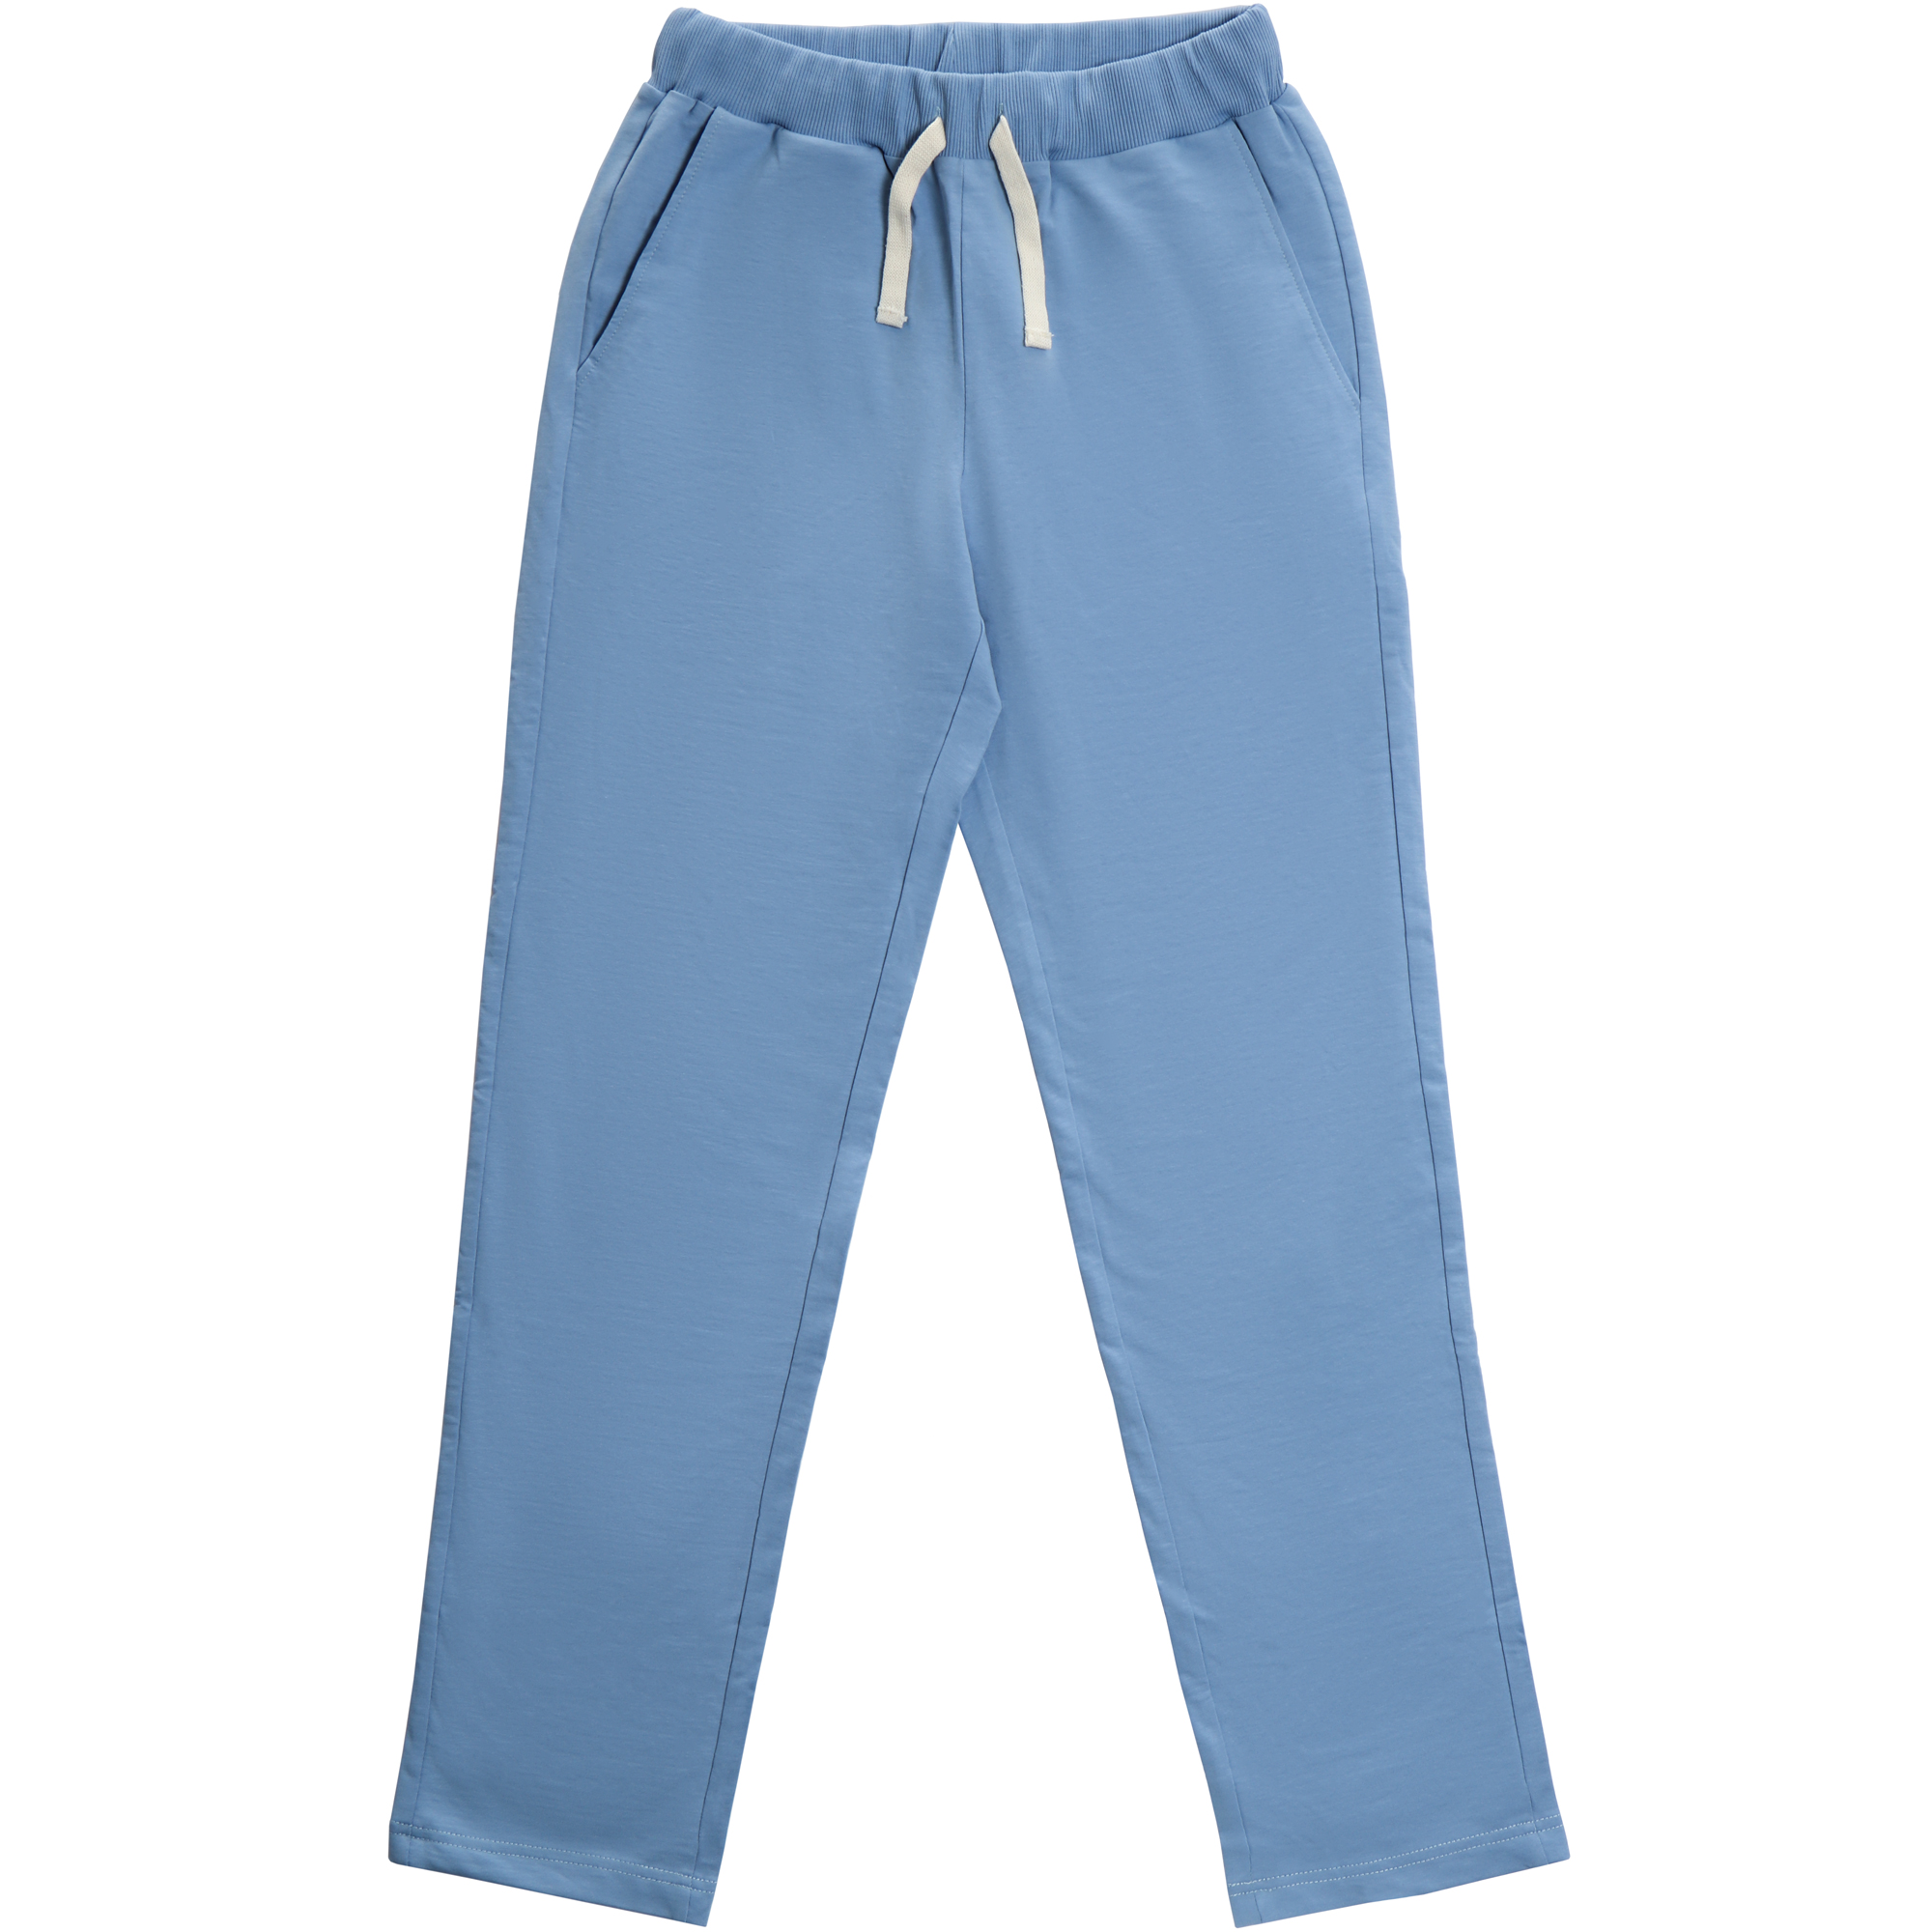 Мужские брюки Birlik голубые, цвет голубой, размер XL - фото 1